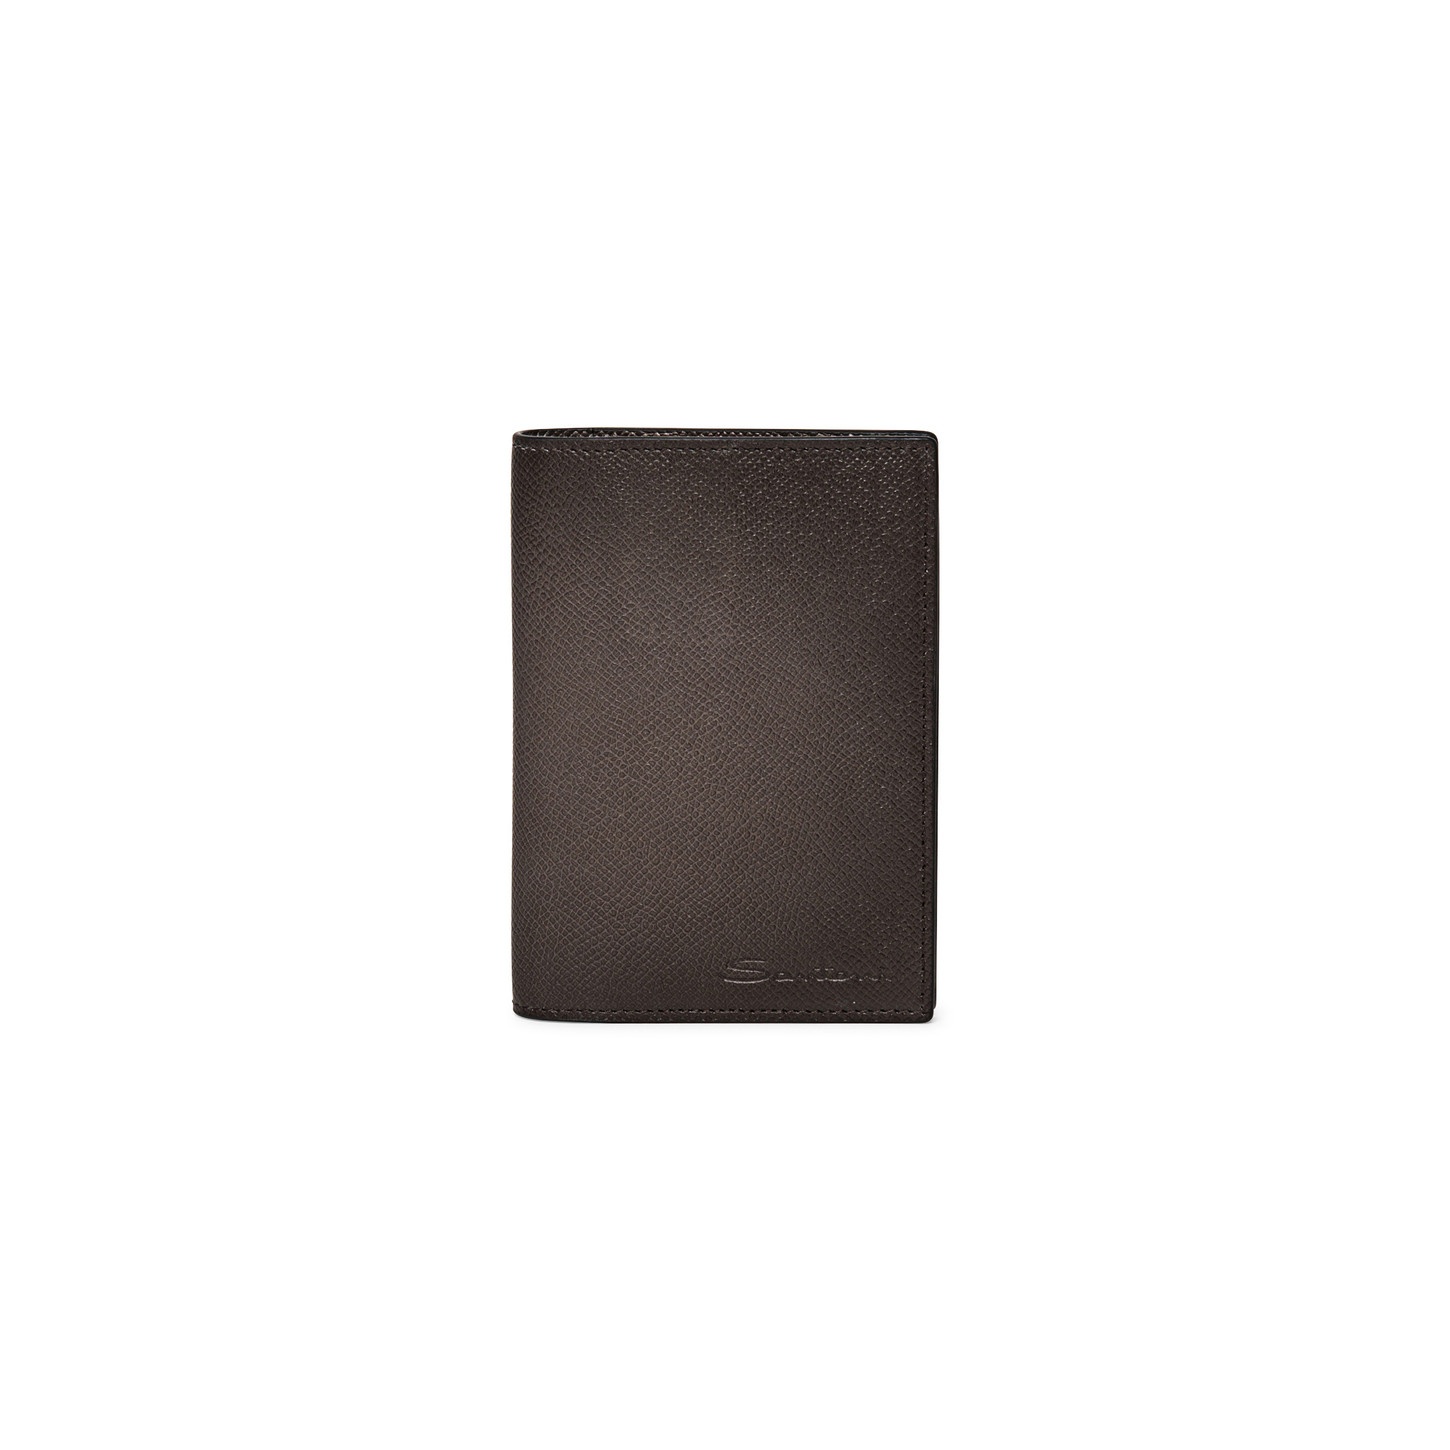 Beige saffiano leather passport case - 1